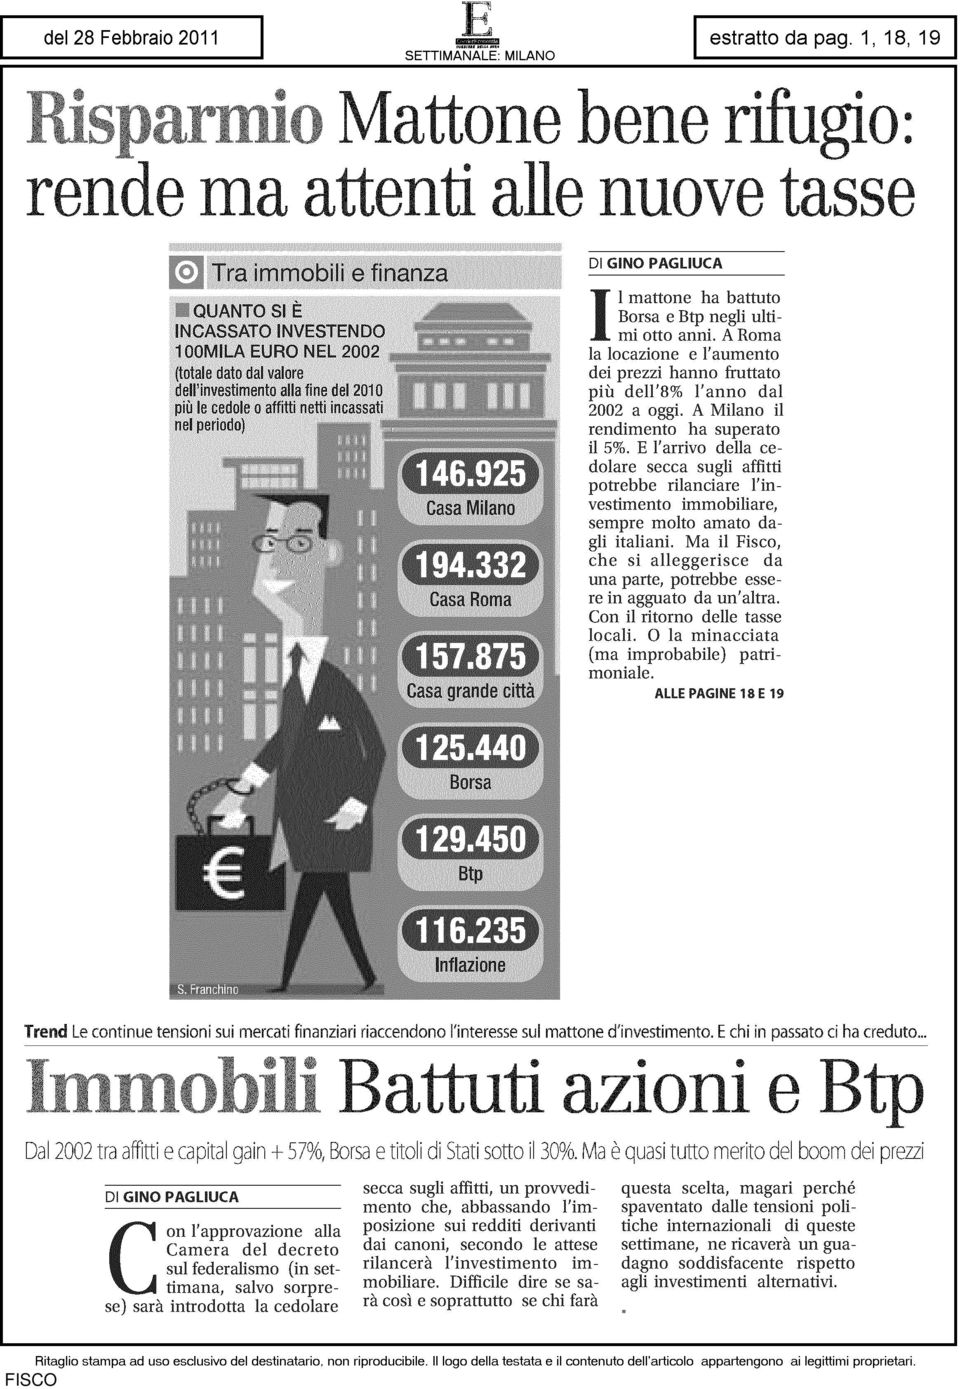 E l'arrivo della cedolare secca sugli affitti potrebbe rilanciare l'investimento immobiliare, sempre molto amato dagli italiani.